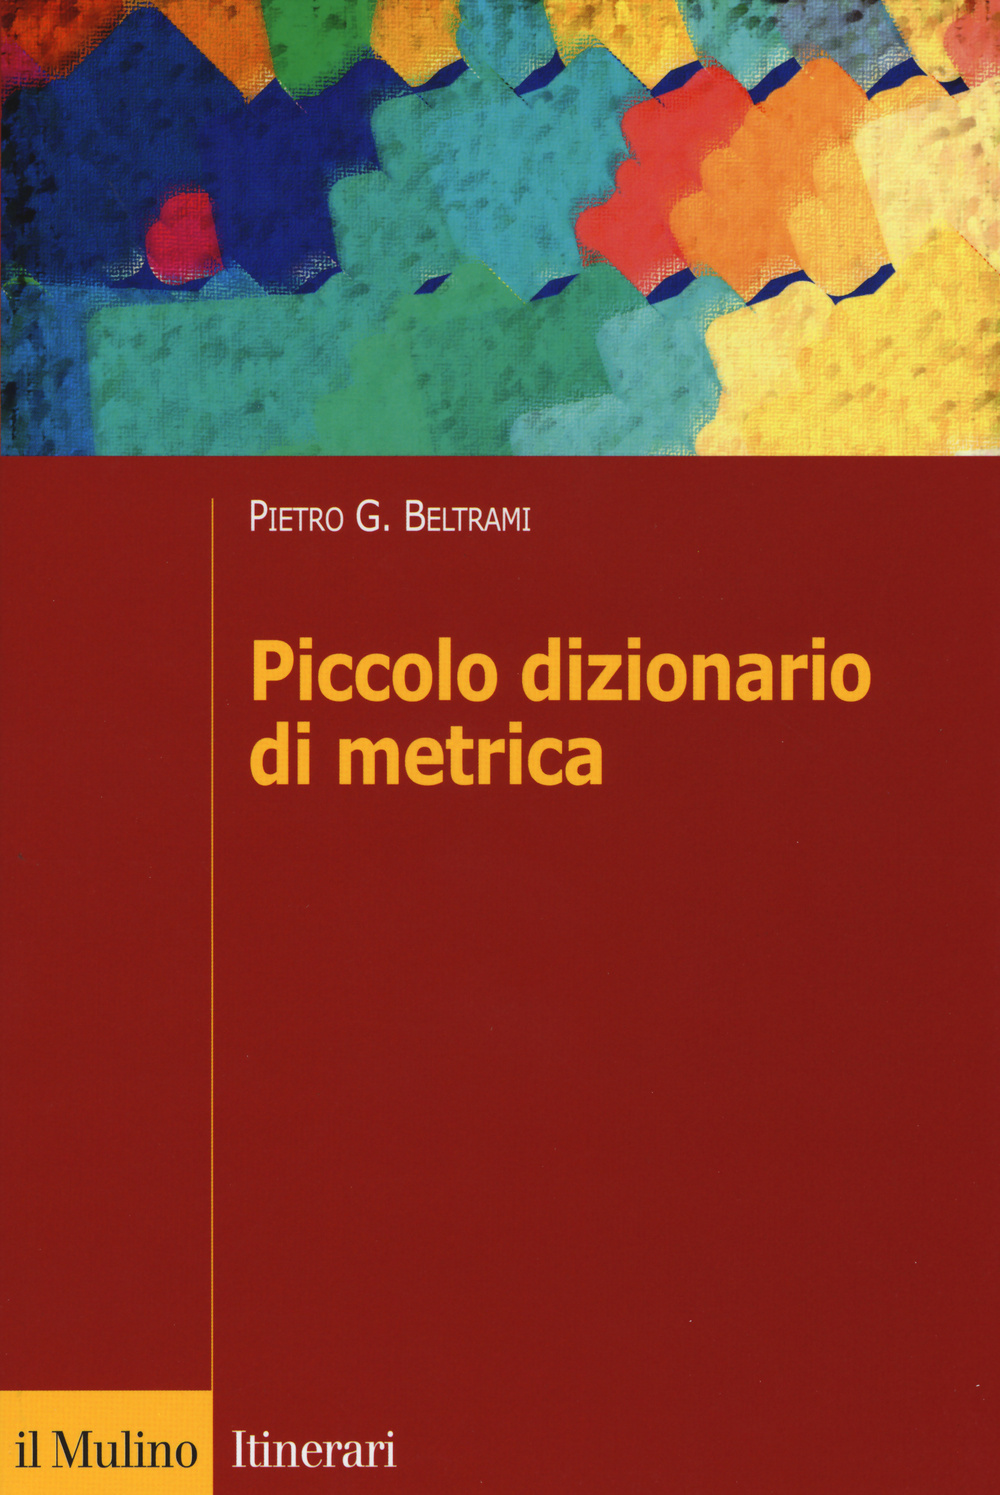 Image of Piccolo dizionario di metrica